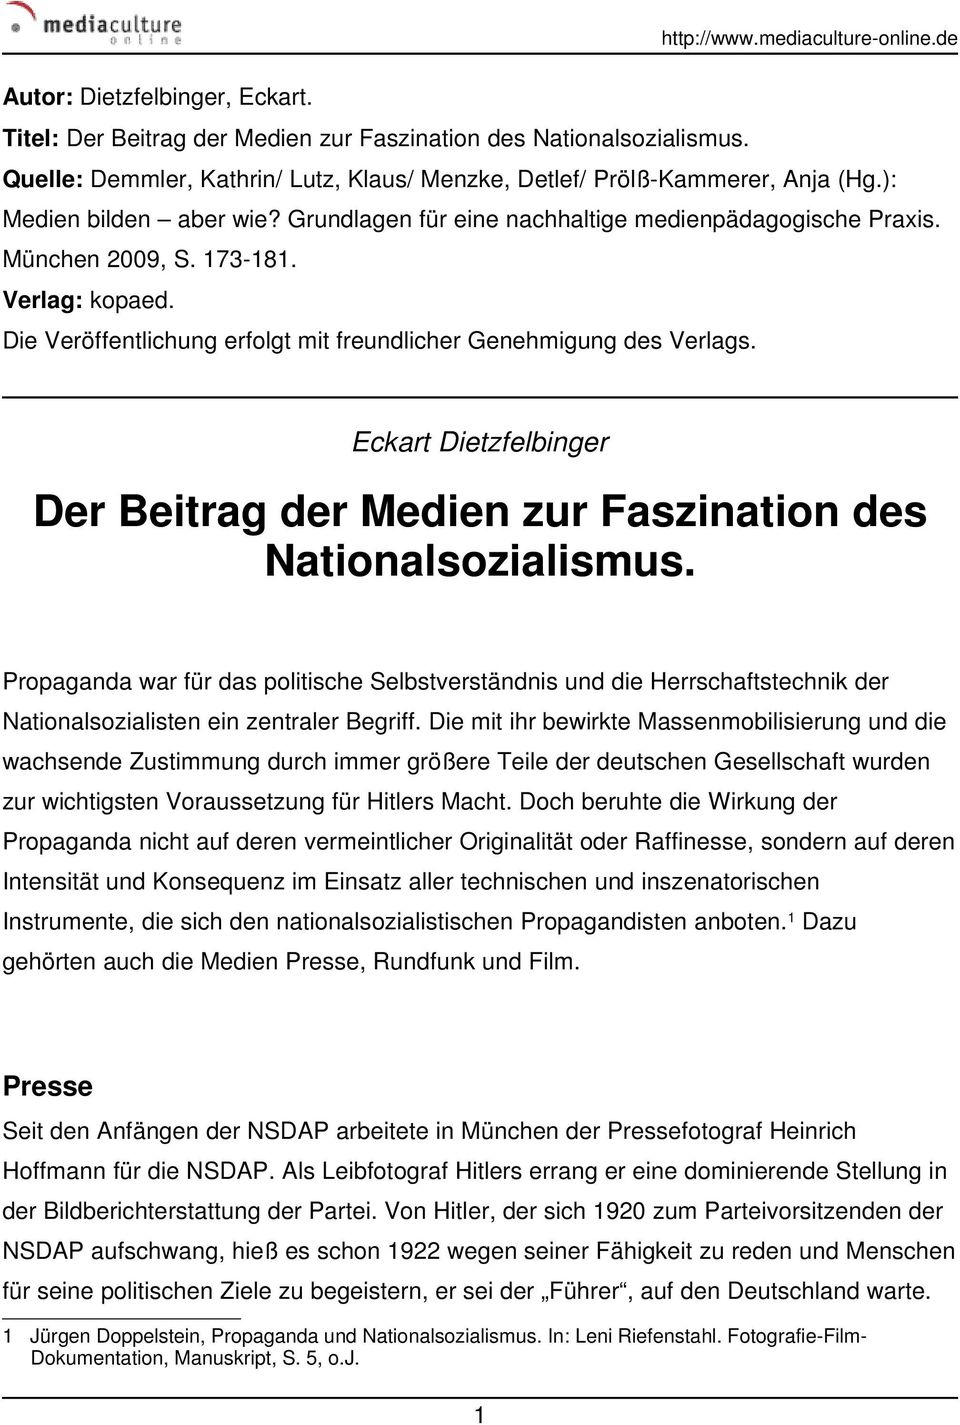 Eckart Dietzfelbinger Der Beitrag der Medien zur Faszination des Nationalsozialismus.